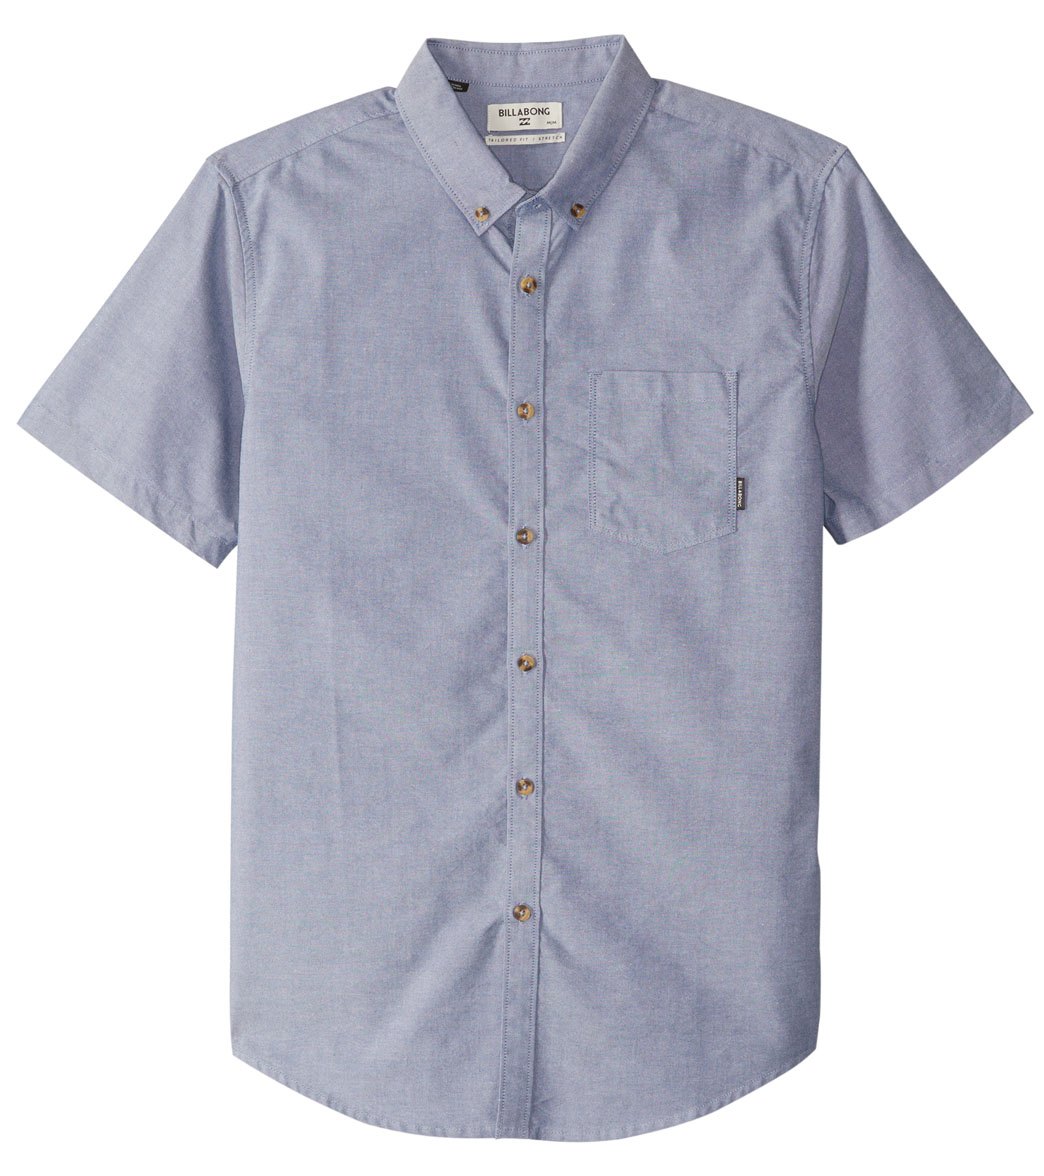 Billabong Men's All Day Oxford Short Sleeve Shirt - Blue Small Cotton - Swimoutlet.com